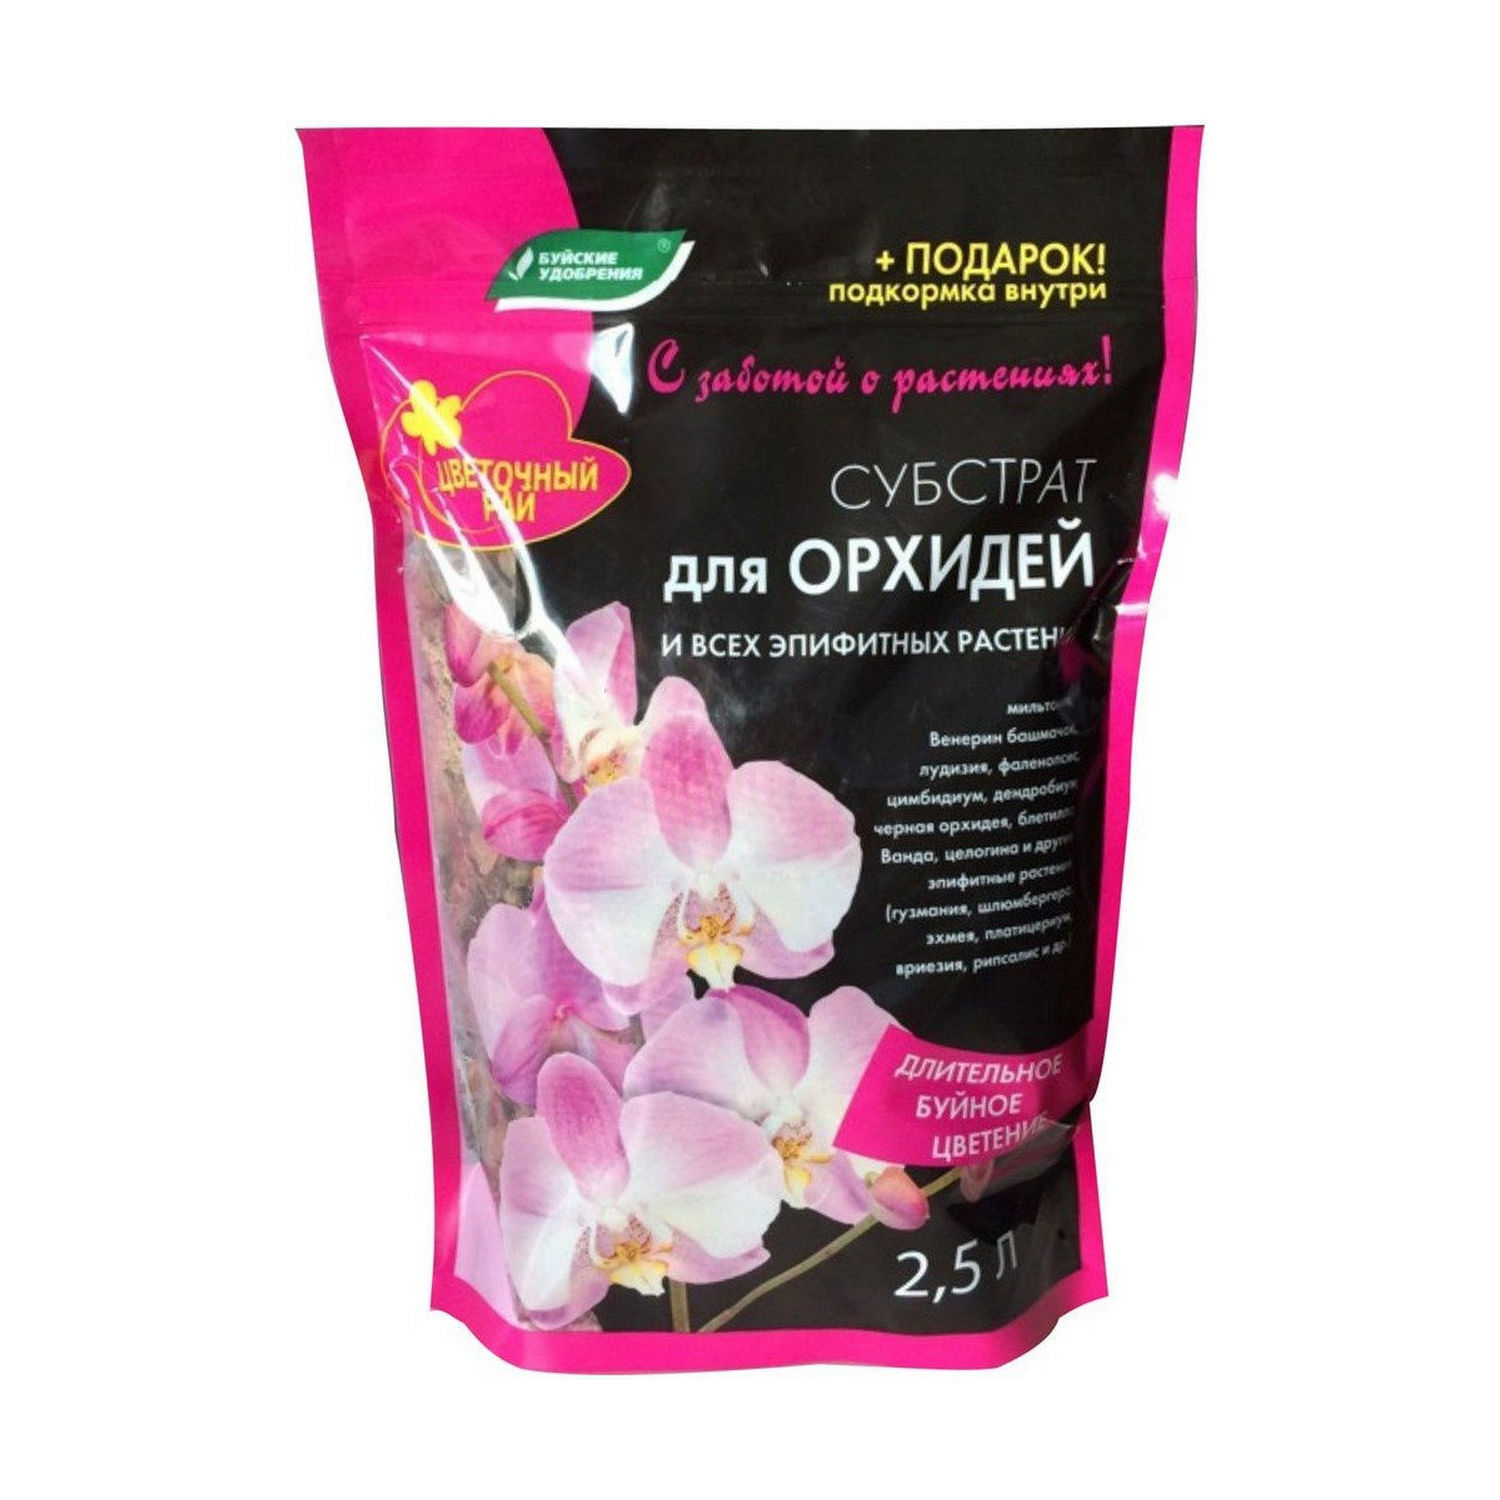 90223416 Грунт питательный Цветочный рай Субстрат для орхидей и всех эпифитных растений 2,5л STLM-0138147 БУЙСКИЕ УДОБРЕНИЯ